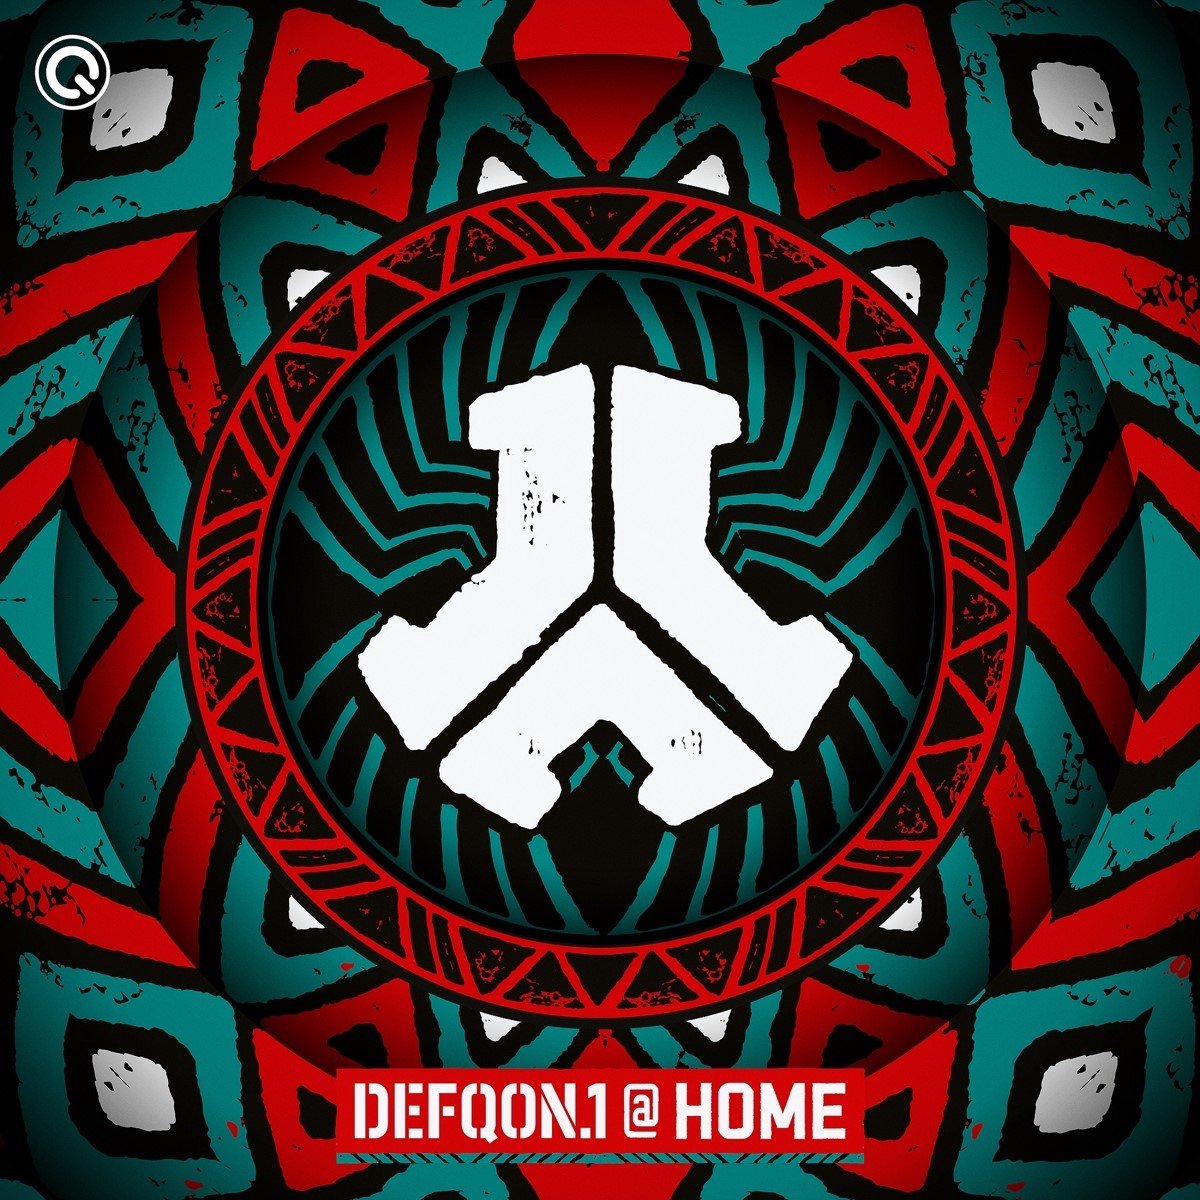 Defqon.1 At Home 2021 (CD) - various artists